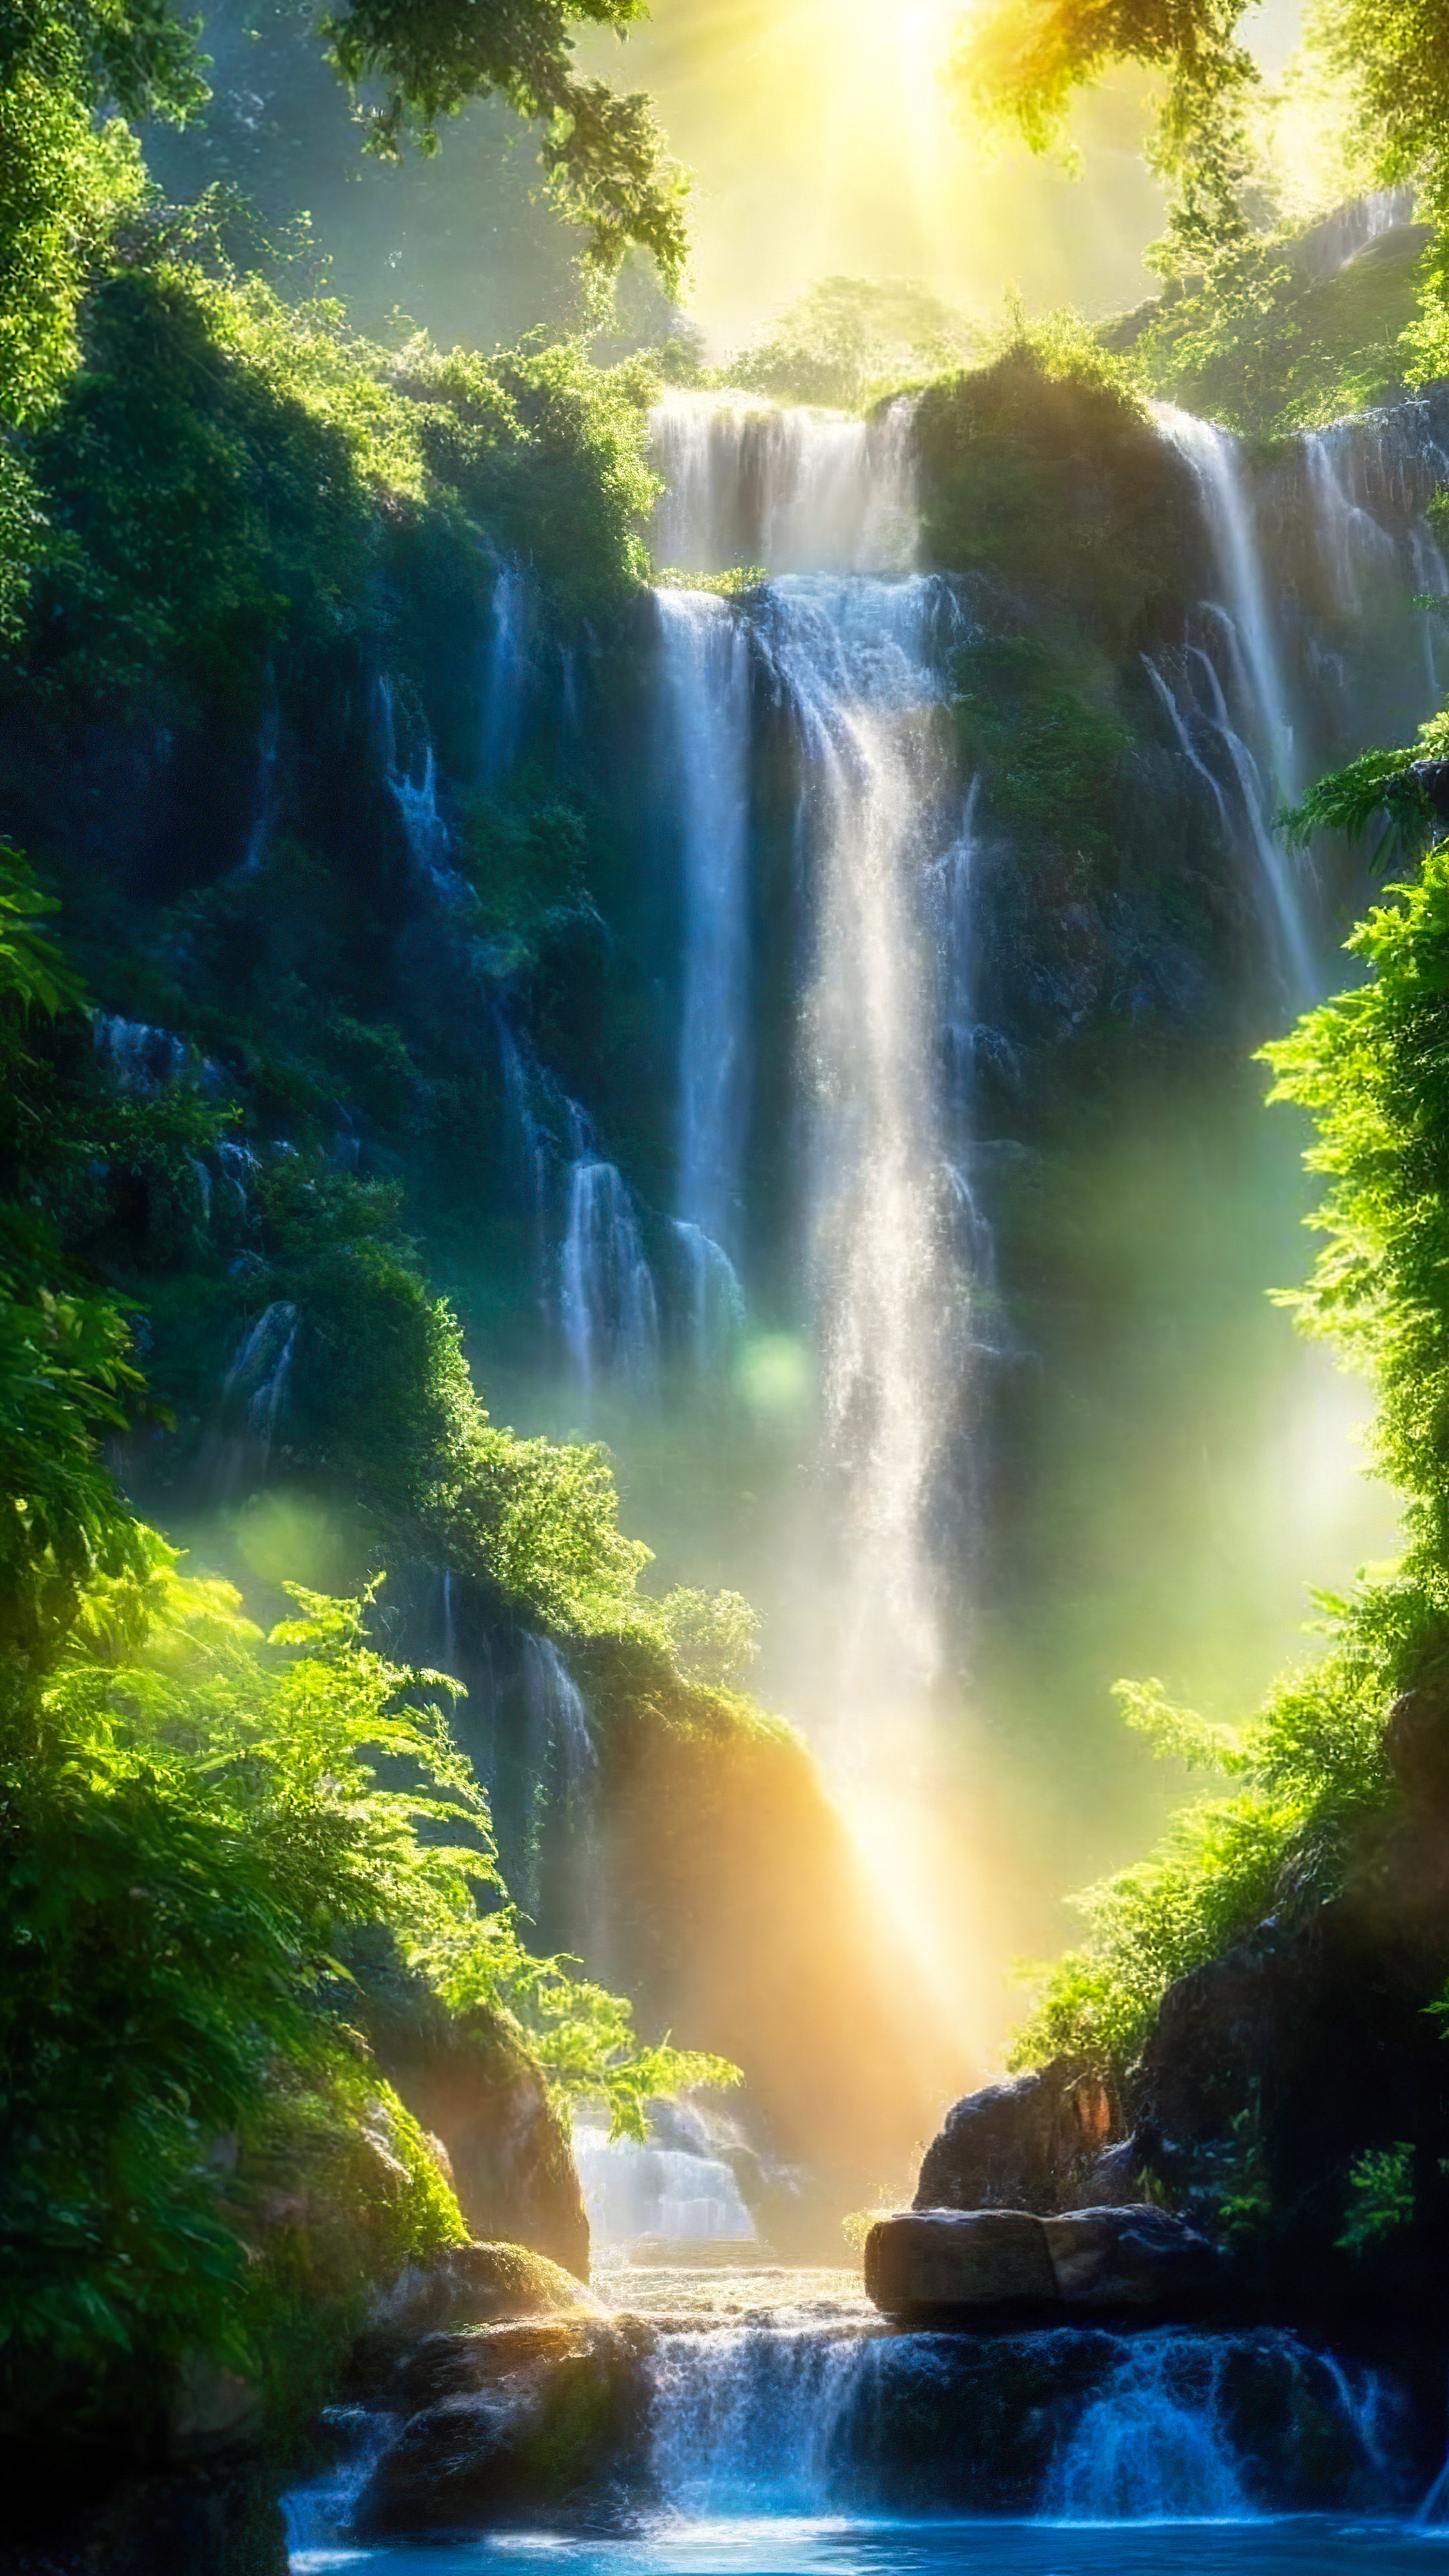 Découvrez l’attrait de notre beau fond d’écran de paysage en HD, présentant une majestueuse cascade encadrée par une verdure luxuriante, avec le soleil projetant une lueur scintillante sur l’eau qui dégringole. 